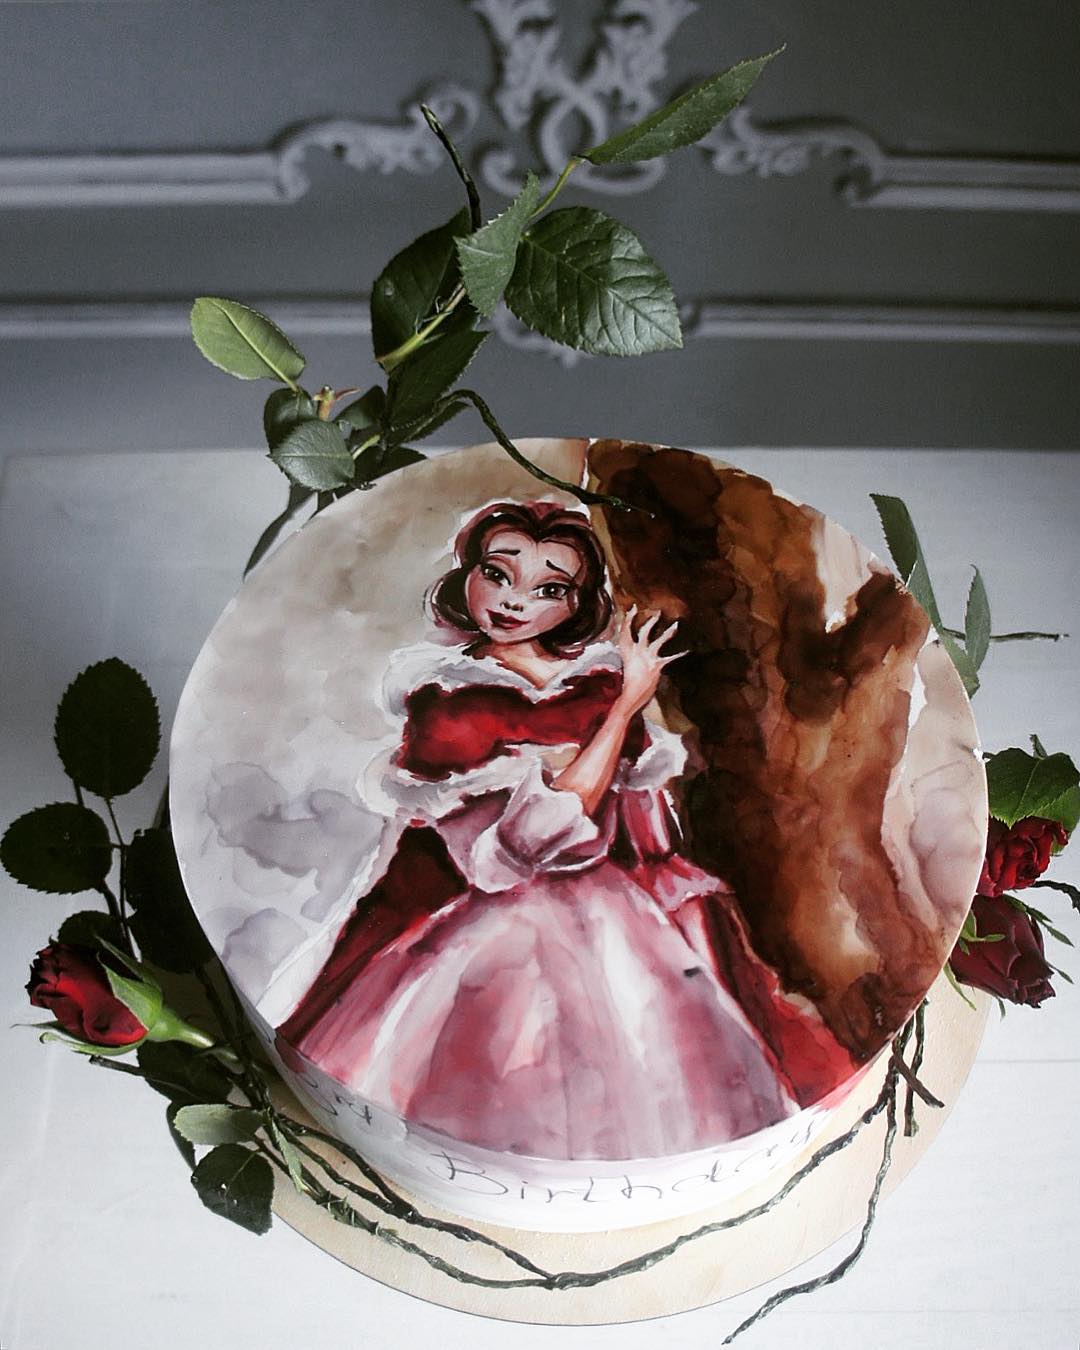 Repostera rusa crea hermosos pasteles llenos de fantasía